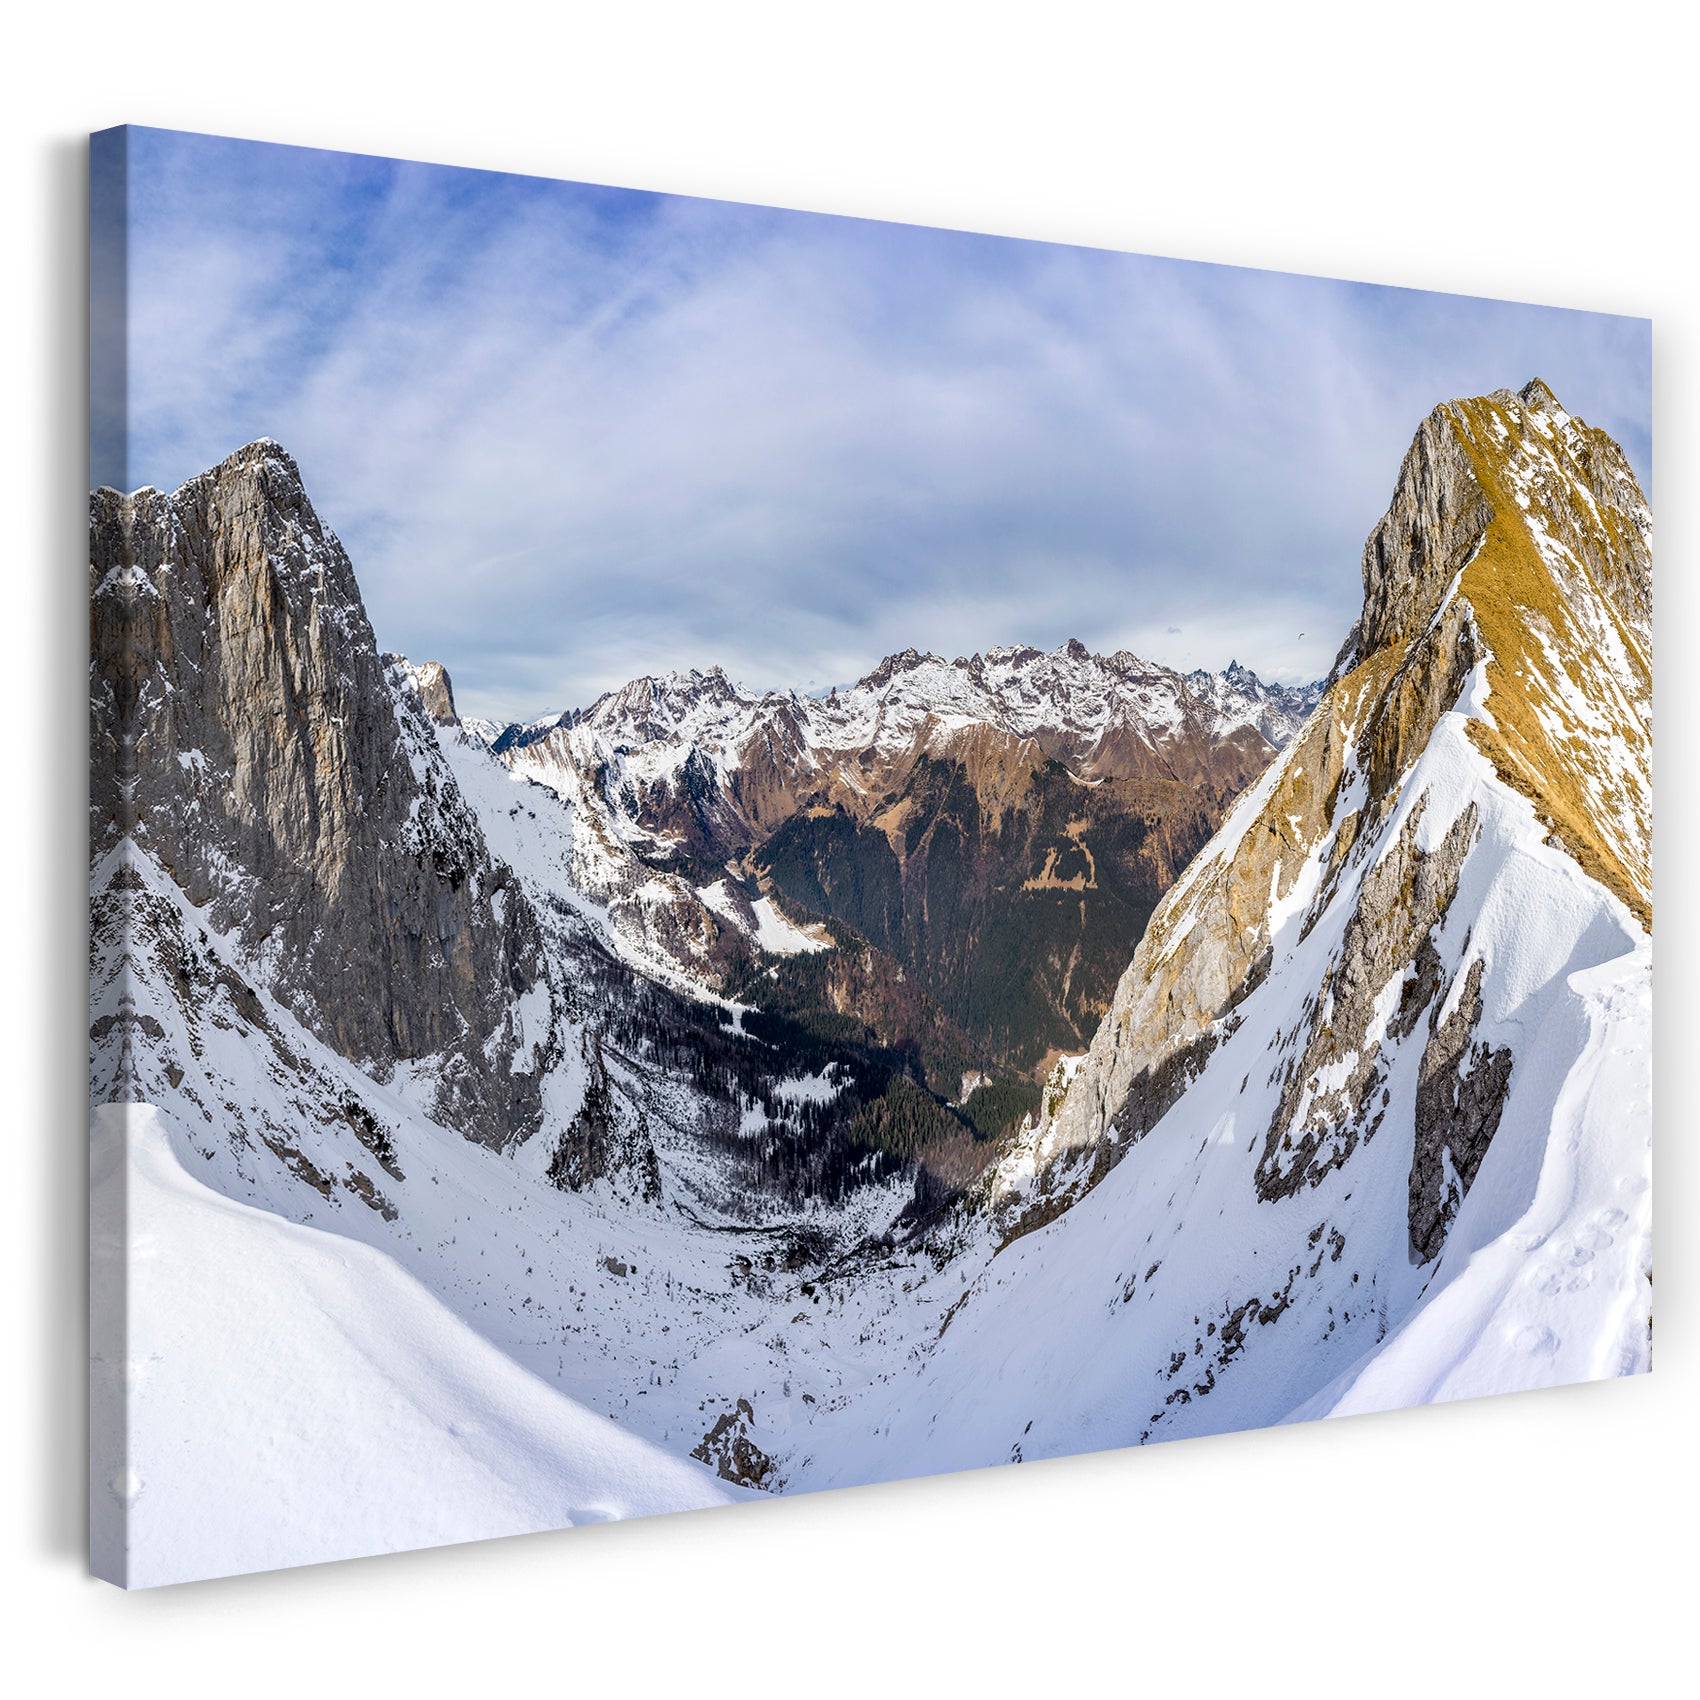 Leinwandbild Landschaftsbilder Berge bedeckt von Schnee blauer Himel